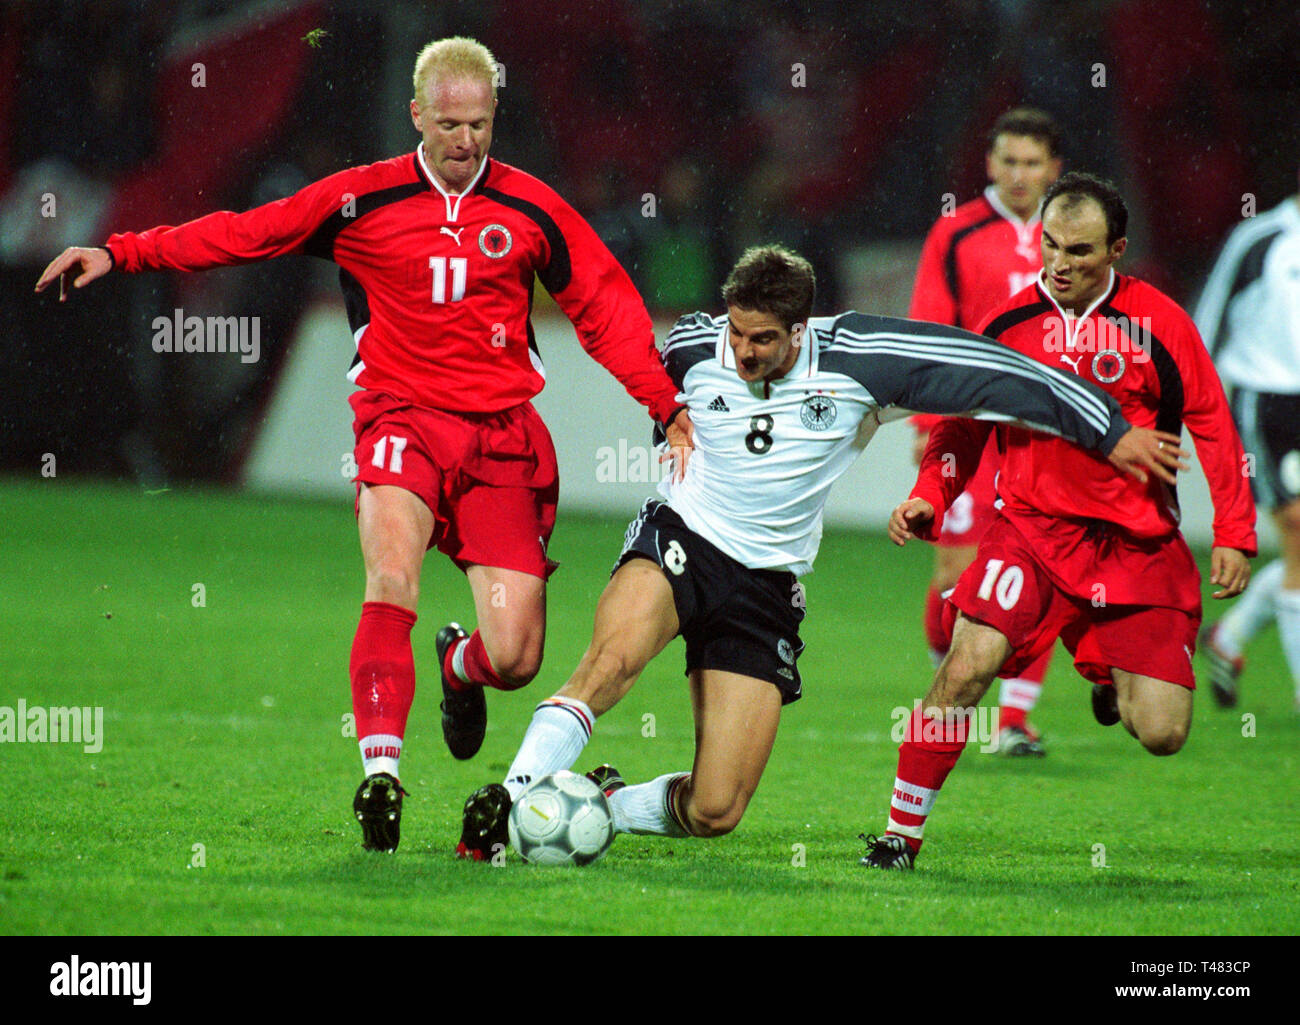 Bay-Arena Leverkusen Deutschland 24.3.2001, Fußball-Qualifikationsspiel für  die FIFA WM 2002, Deutschland (weiß) gegen Albanien (rot) 2:1 --- Von  links: Igli TARE (ALB), Sebastian DEISLER (GER), Fatmir VATA (ALB  Stockfotografie - Alamy